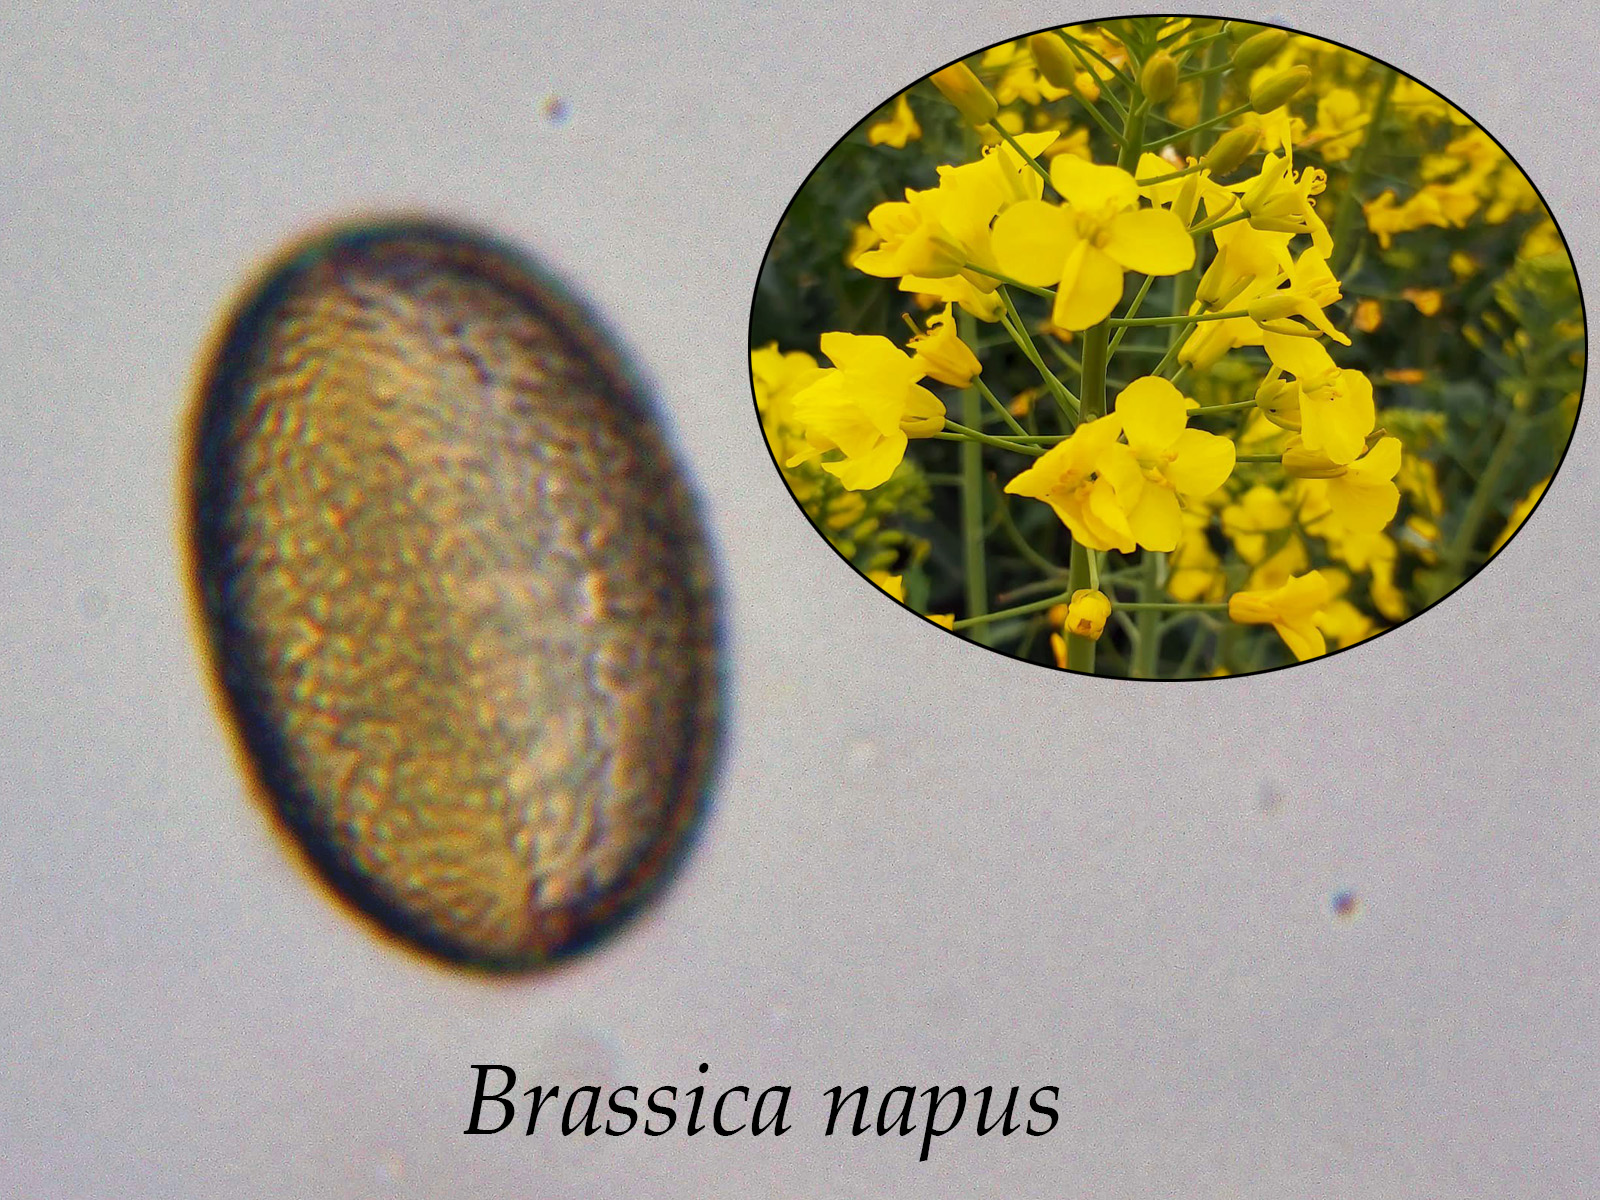 Brassicanapus.jpg